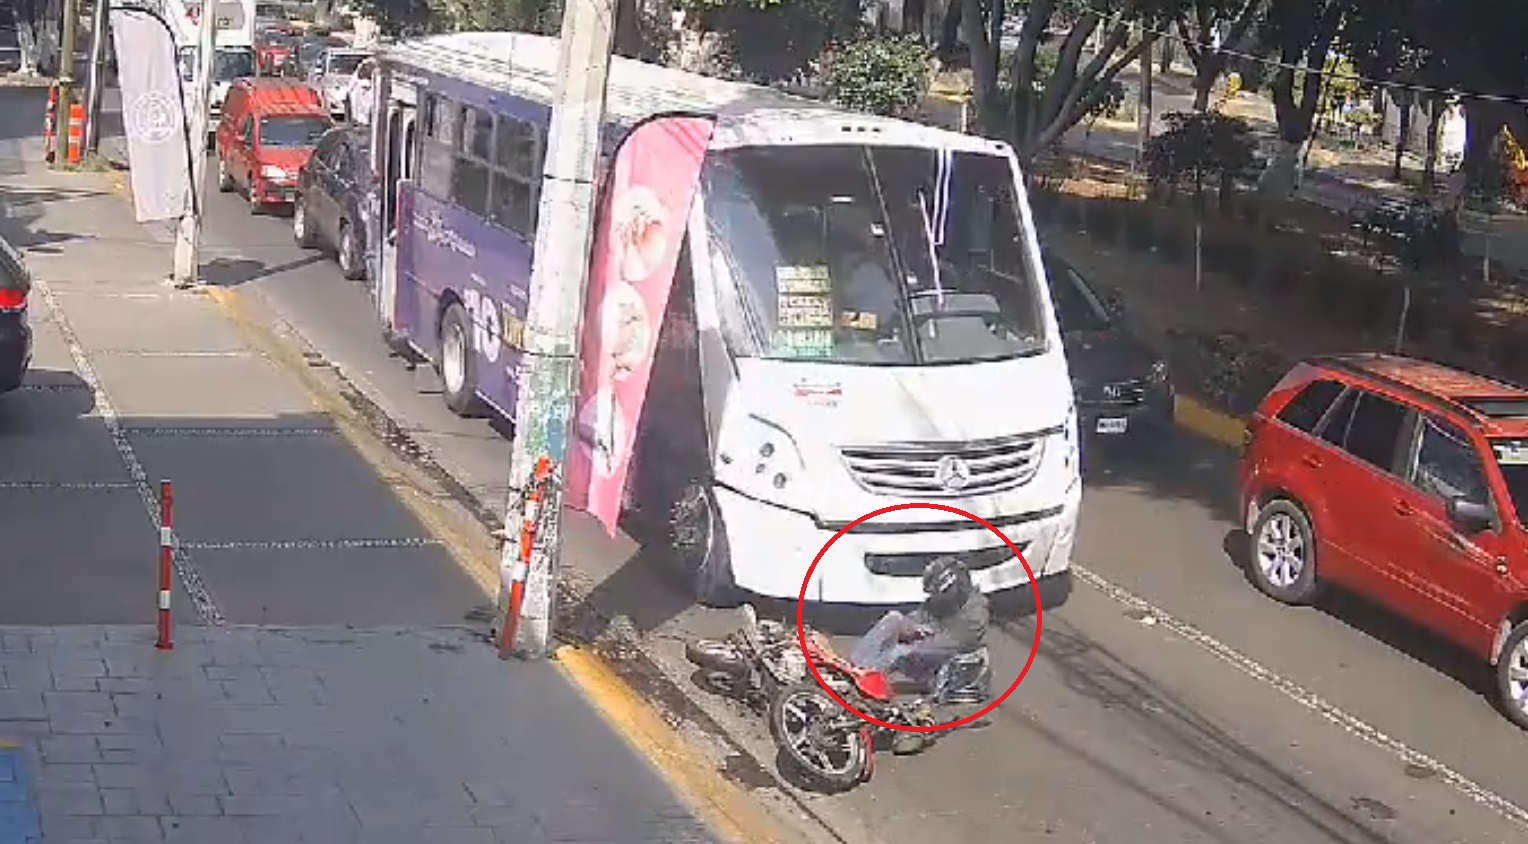 ¿De quién fue la culpa? Motociclista termina arrollado por autobús tras caerse 